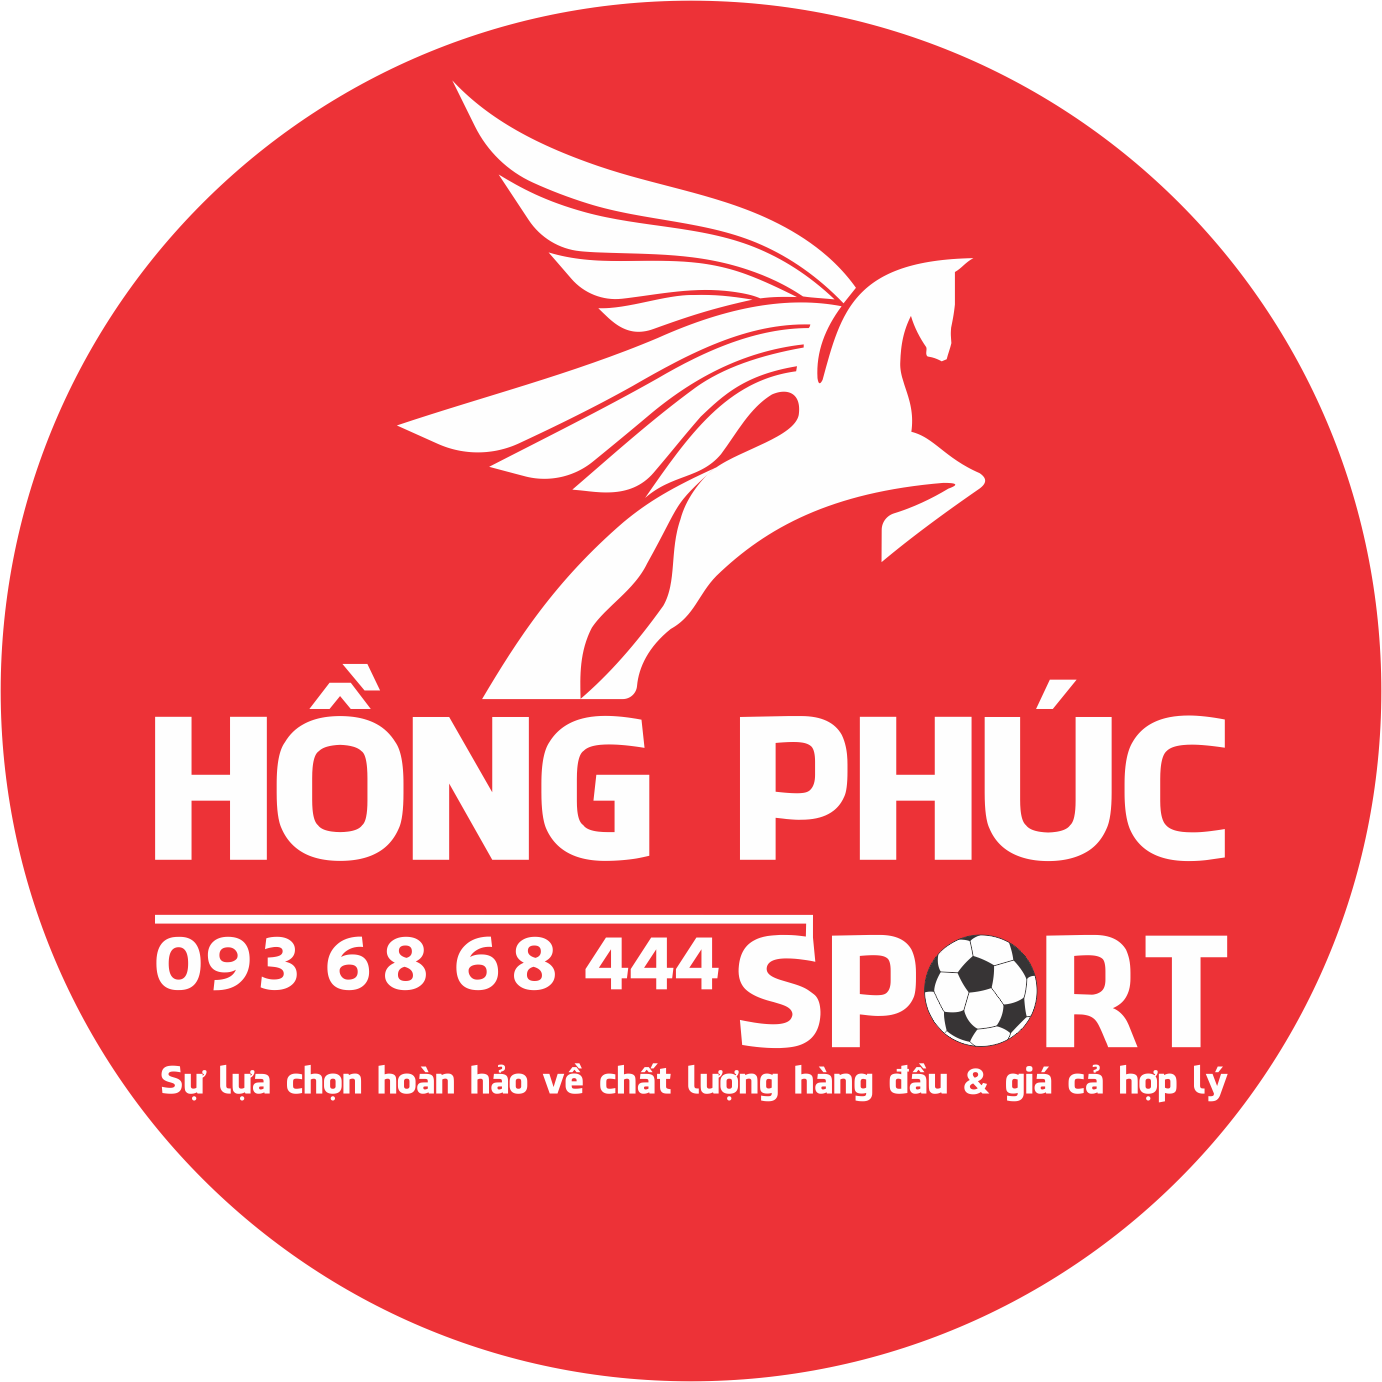 hongphucsport136